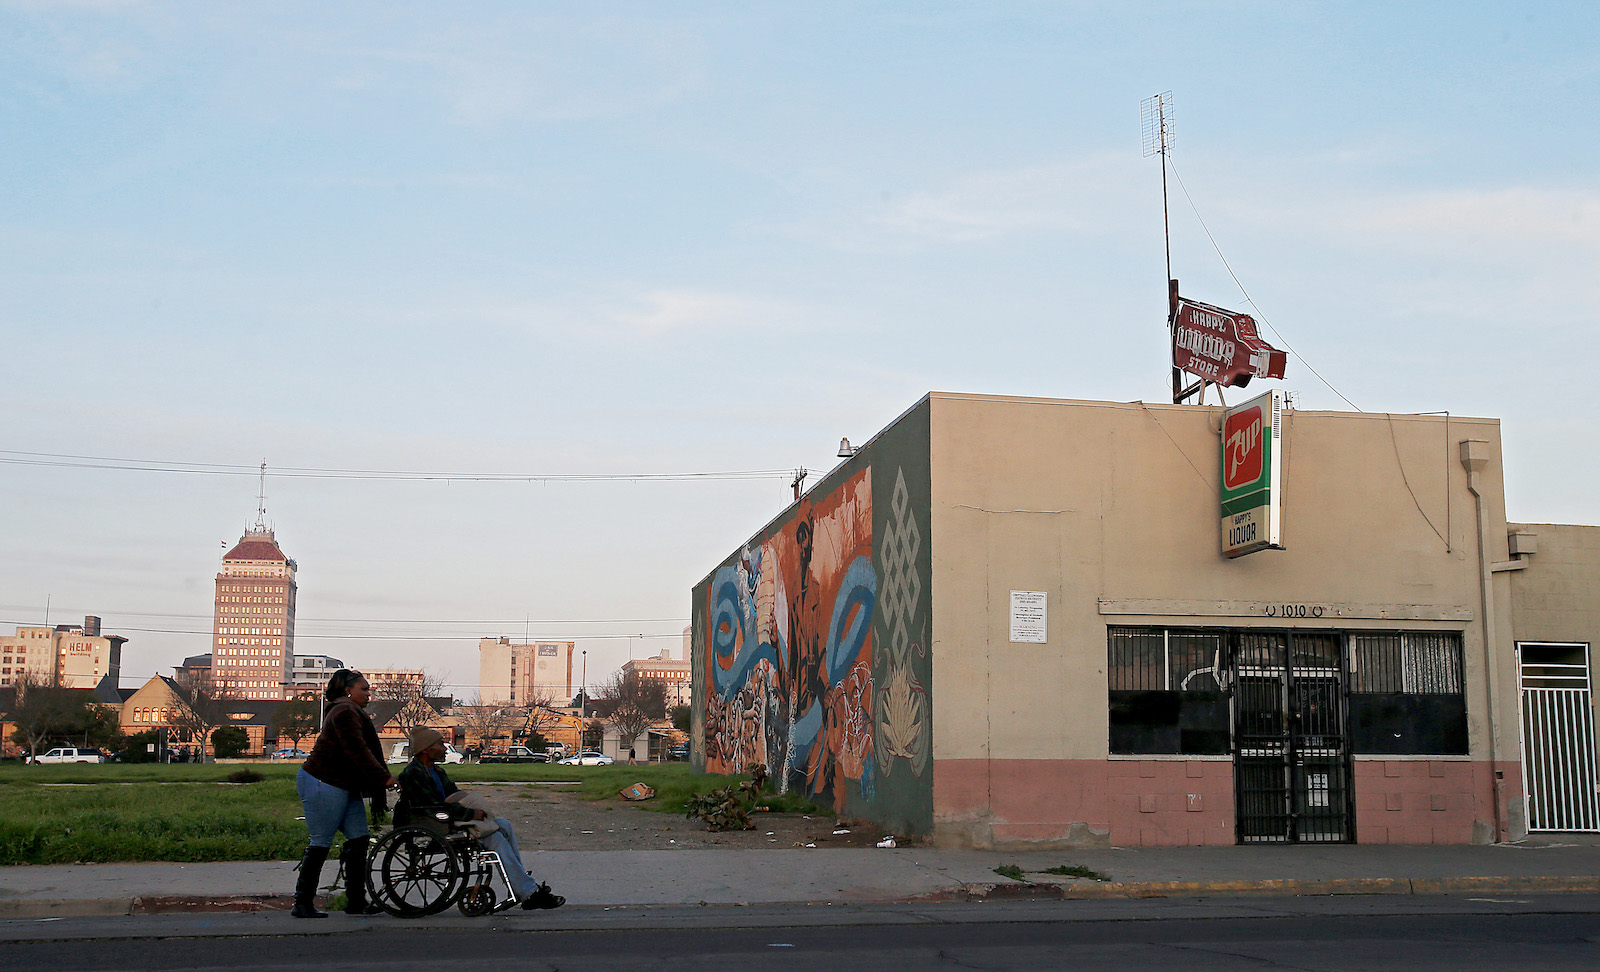 A woman pushes a person in a wheelchair down a city street near a mural